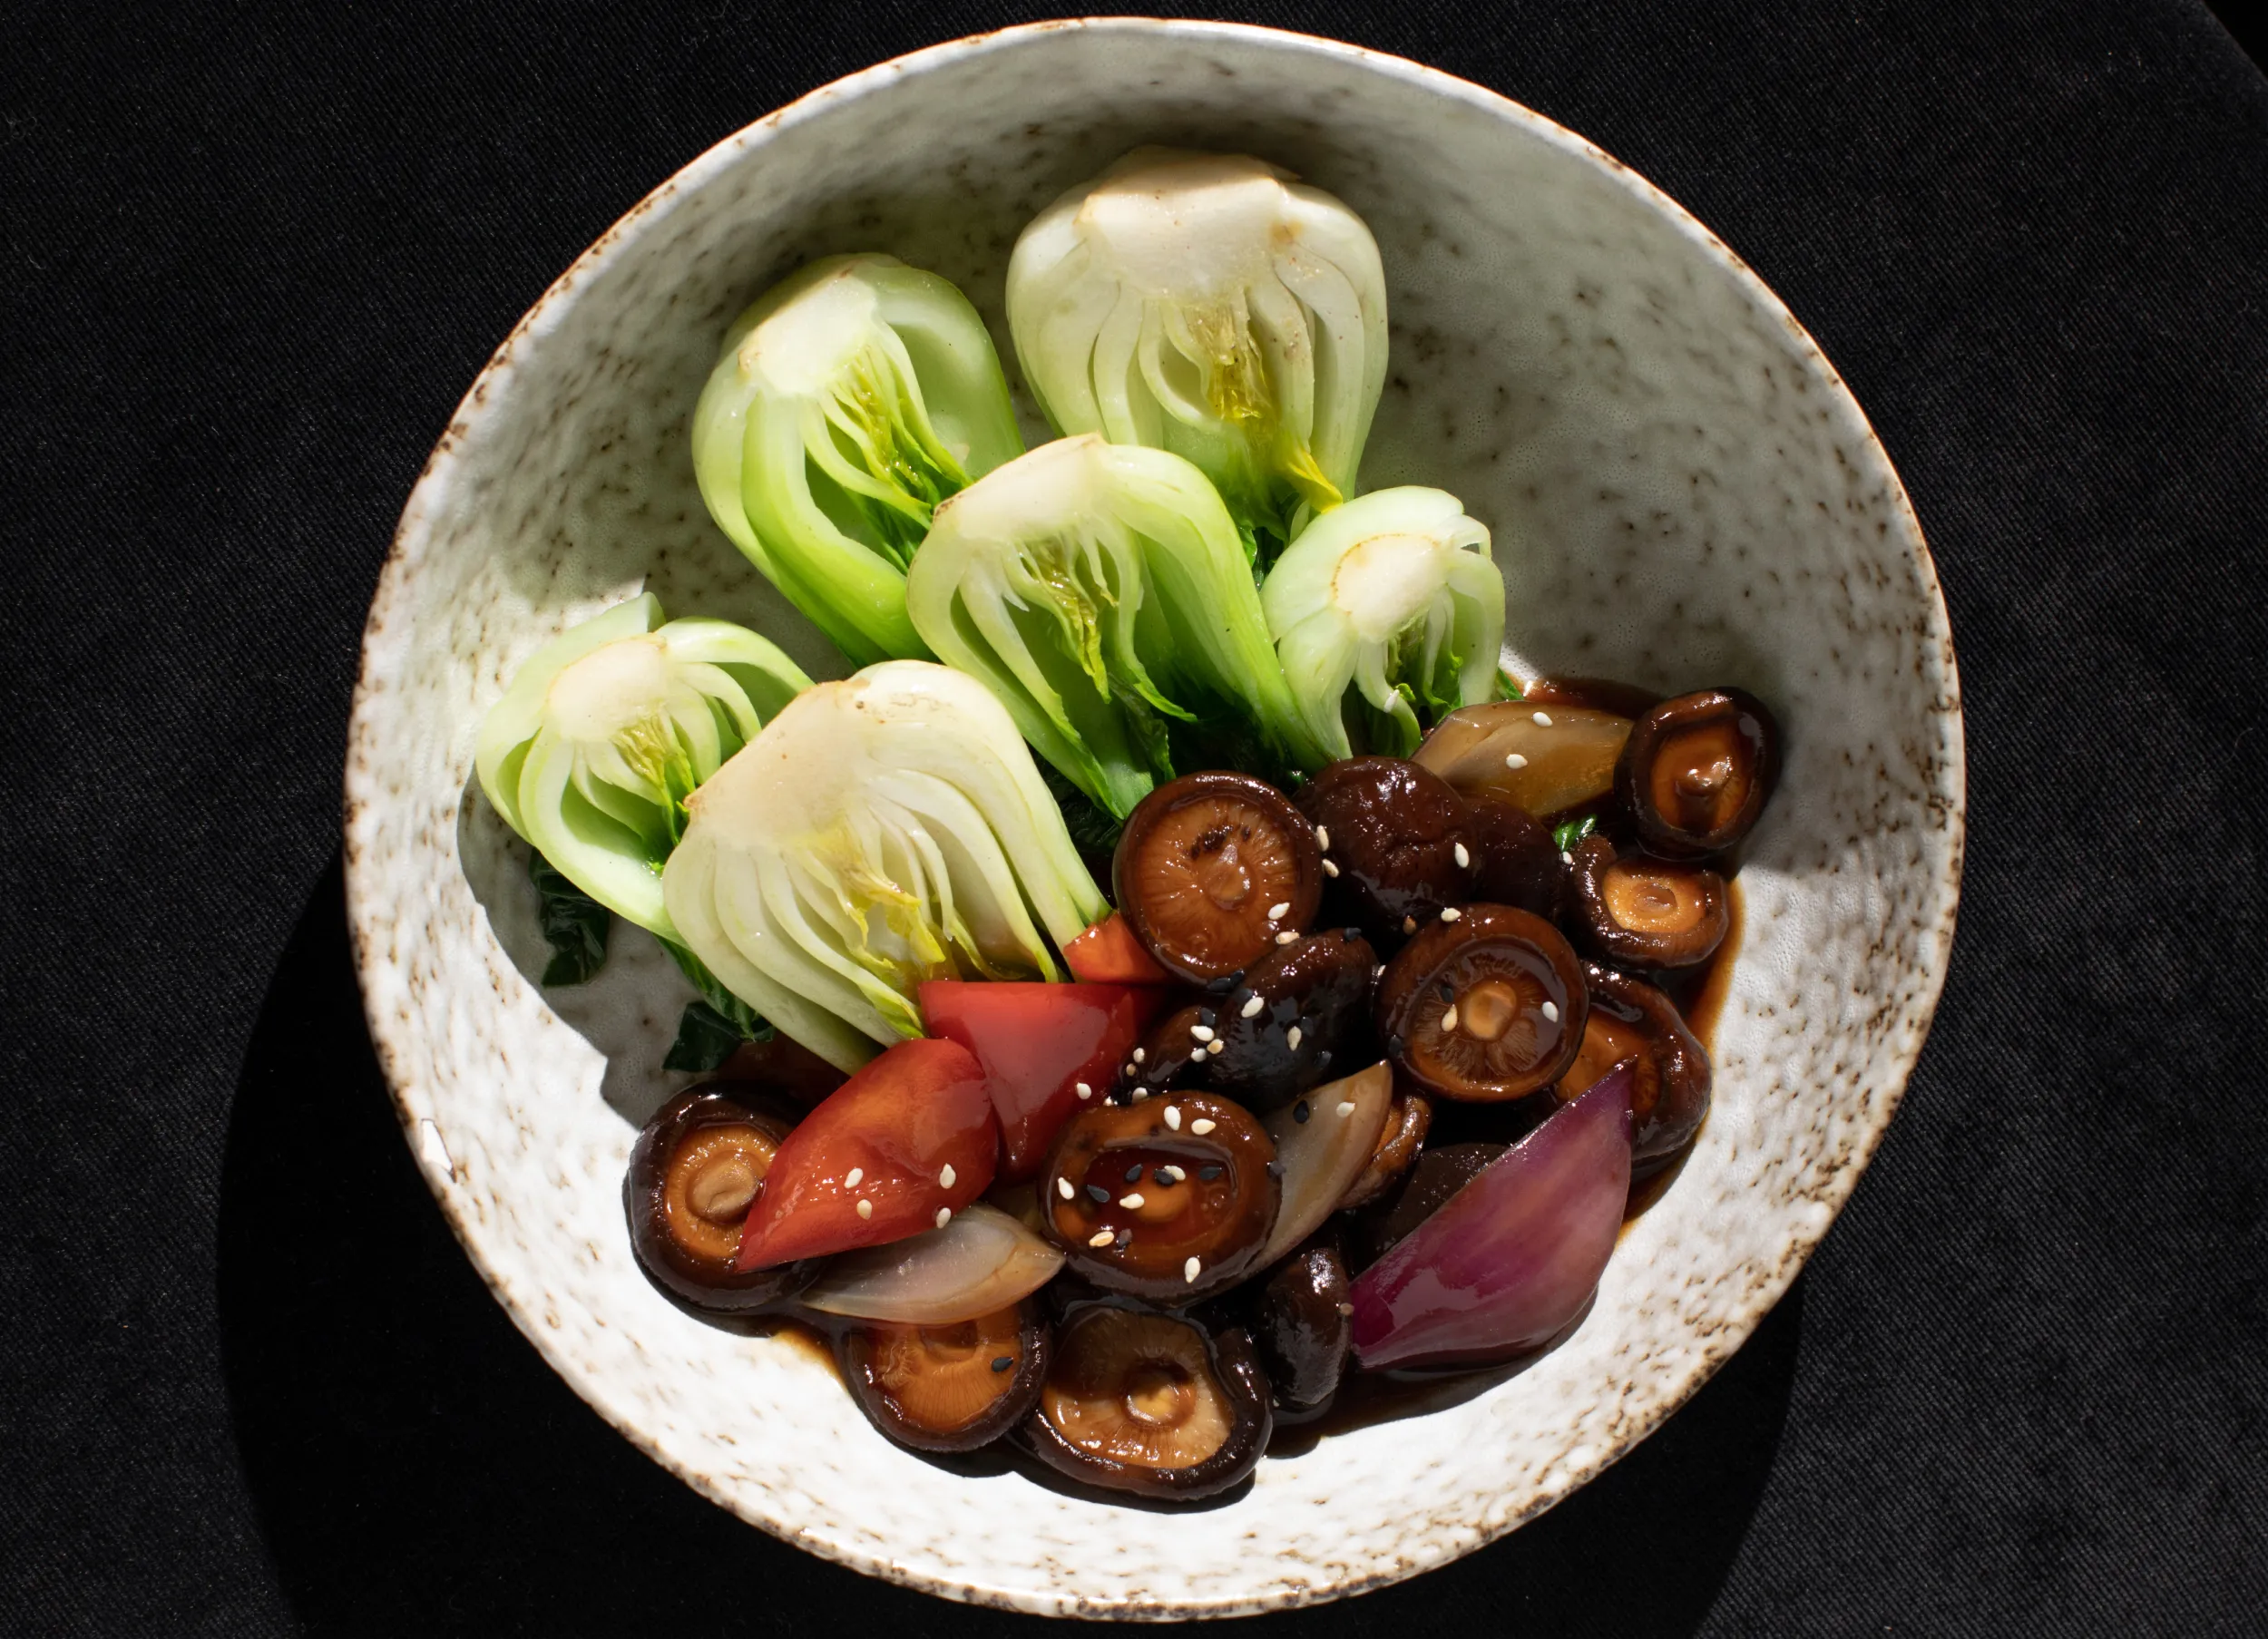 Грибы сянгу с устричным соусом и салатом пак-чой, Chow Chow (Фото: предоставлено пресс-службой ресторана)